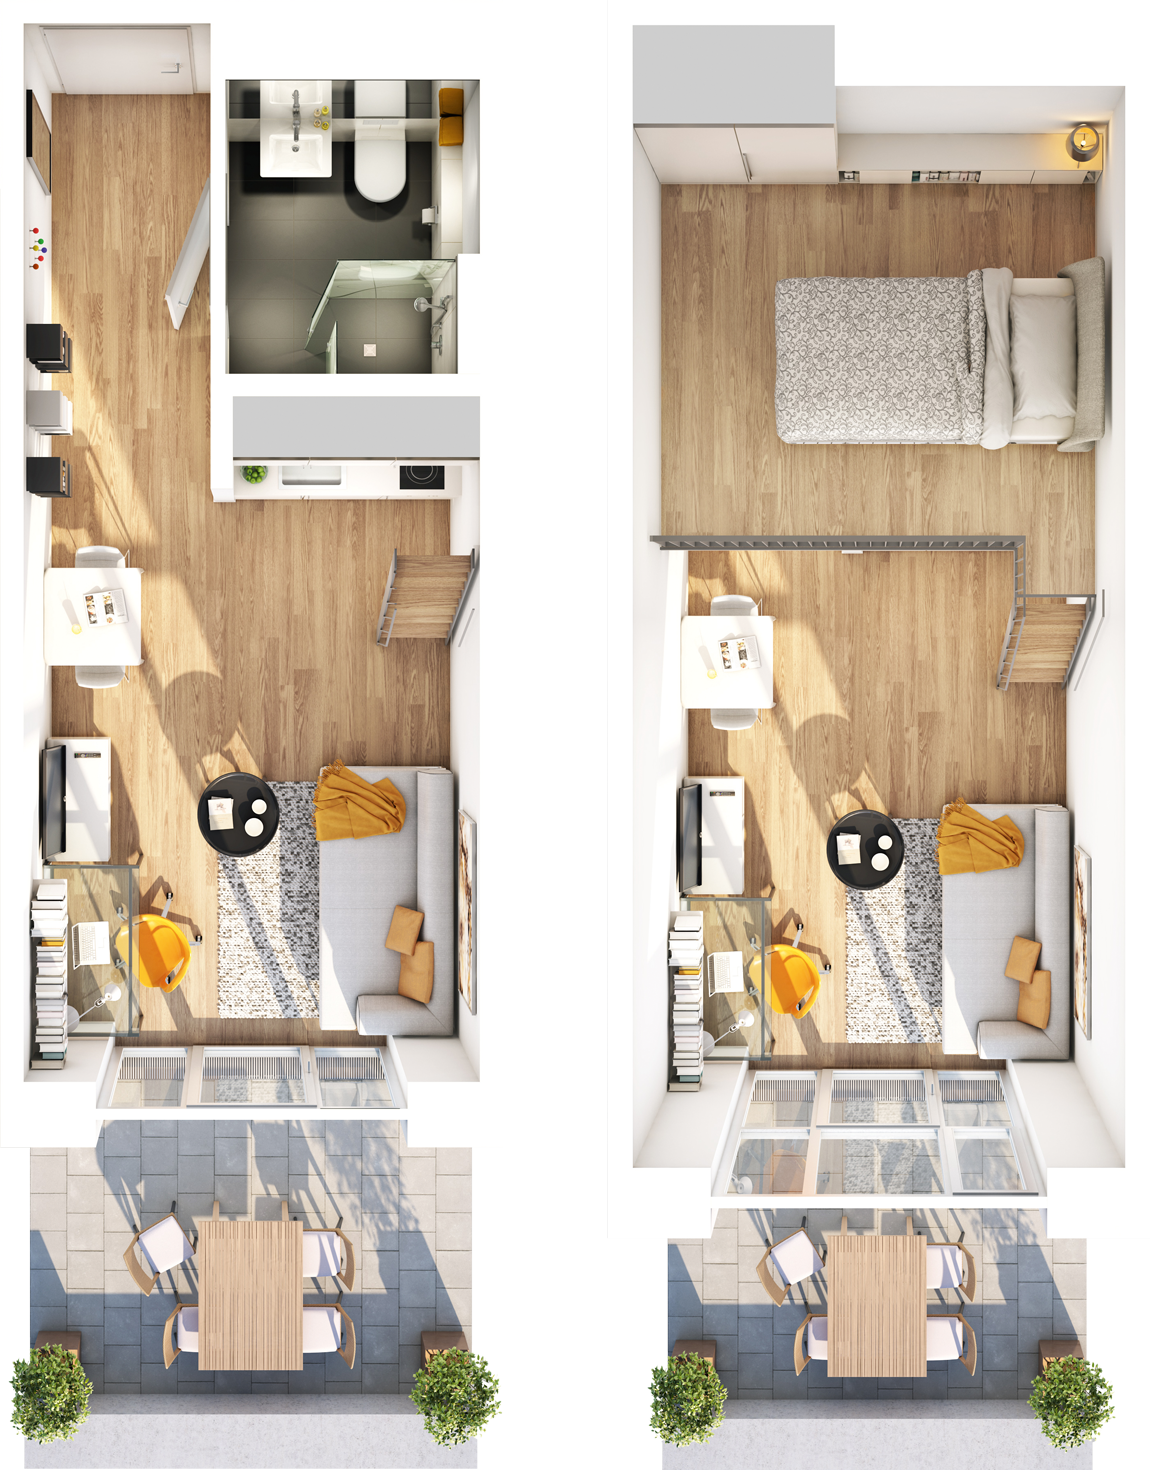 Visualisierung Beispiel 1,5-Zimmer-Wohnung Typ I mit Bad, Küchenzeile, Wohnbereich und Balkon auf der unteren Ebene und Schlafbereich auf der Galerie im studiosus 5 Apartmenthaus in Augsburg